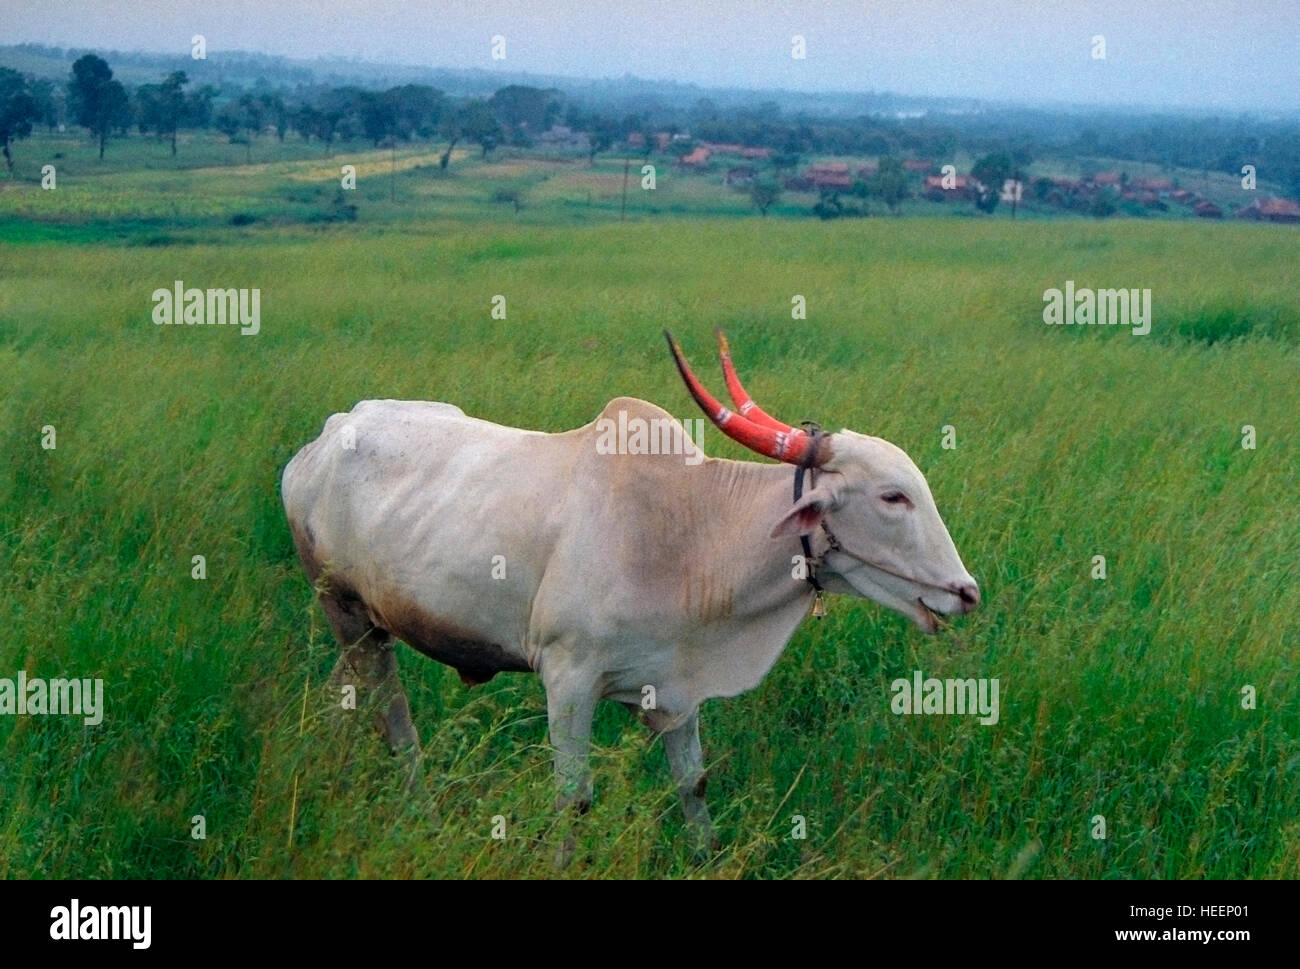 Bull in rural India Stock Photo